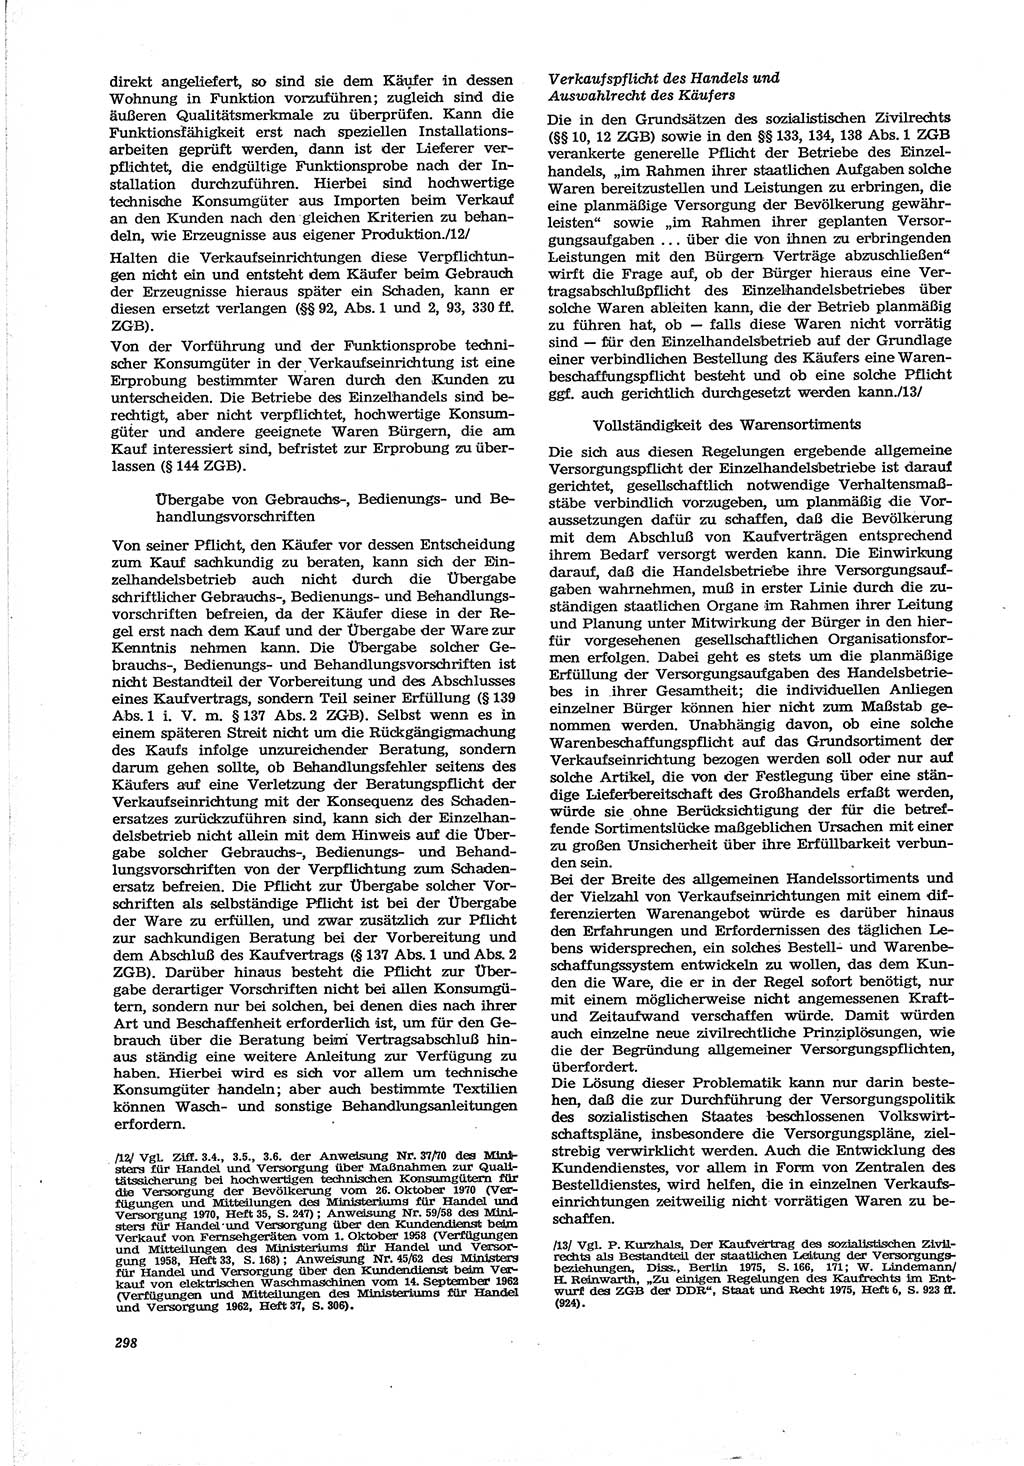 Neue Justiz (NJ), Zeitschrift für Recht und Rechtswissenschaft [Deutsche Demokratische Republik (DDR)], 30. Jahrgang 1976, Seite 298 (NJ DDR 1976, S. 298)